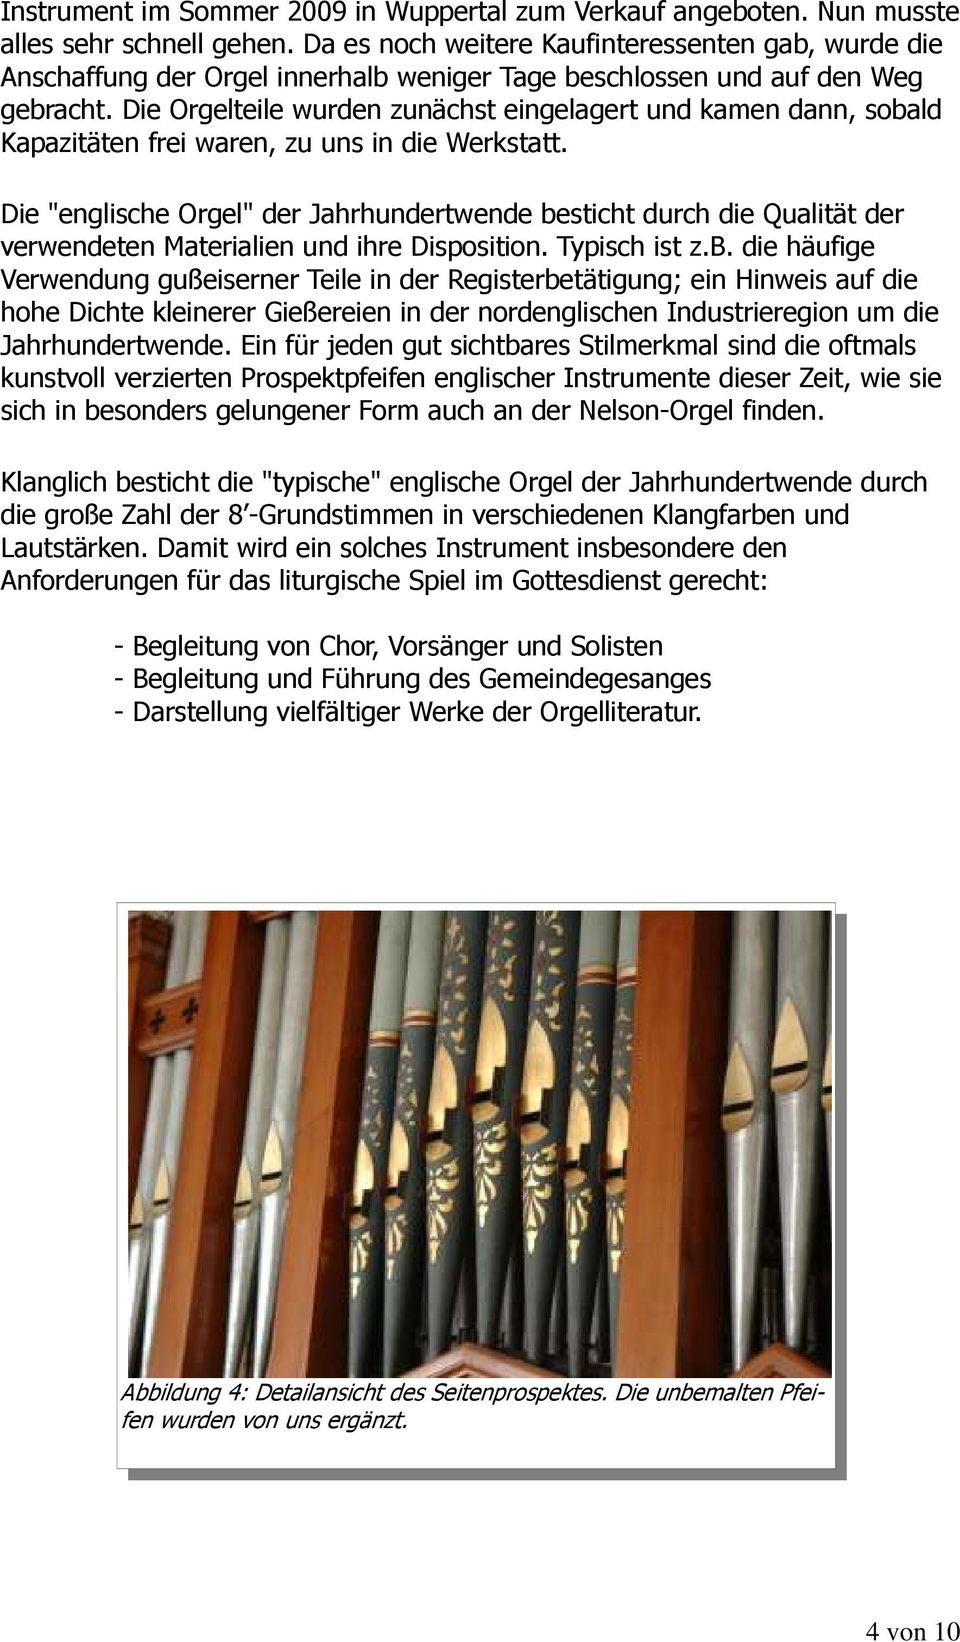 Die Orgelteile wurden zunächst eingelagert und kamen dann, sobald Kapazitäten frei waren, zu uns in die Werkstatt.